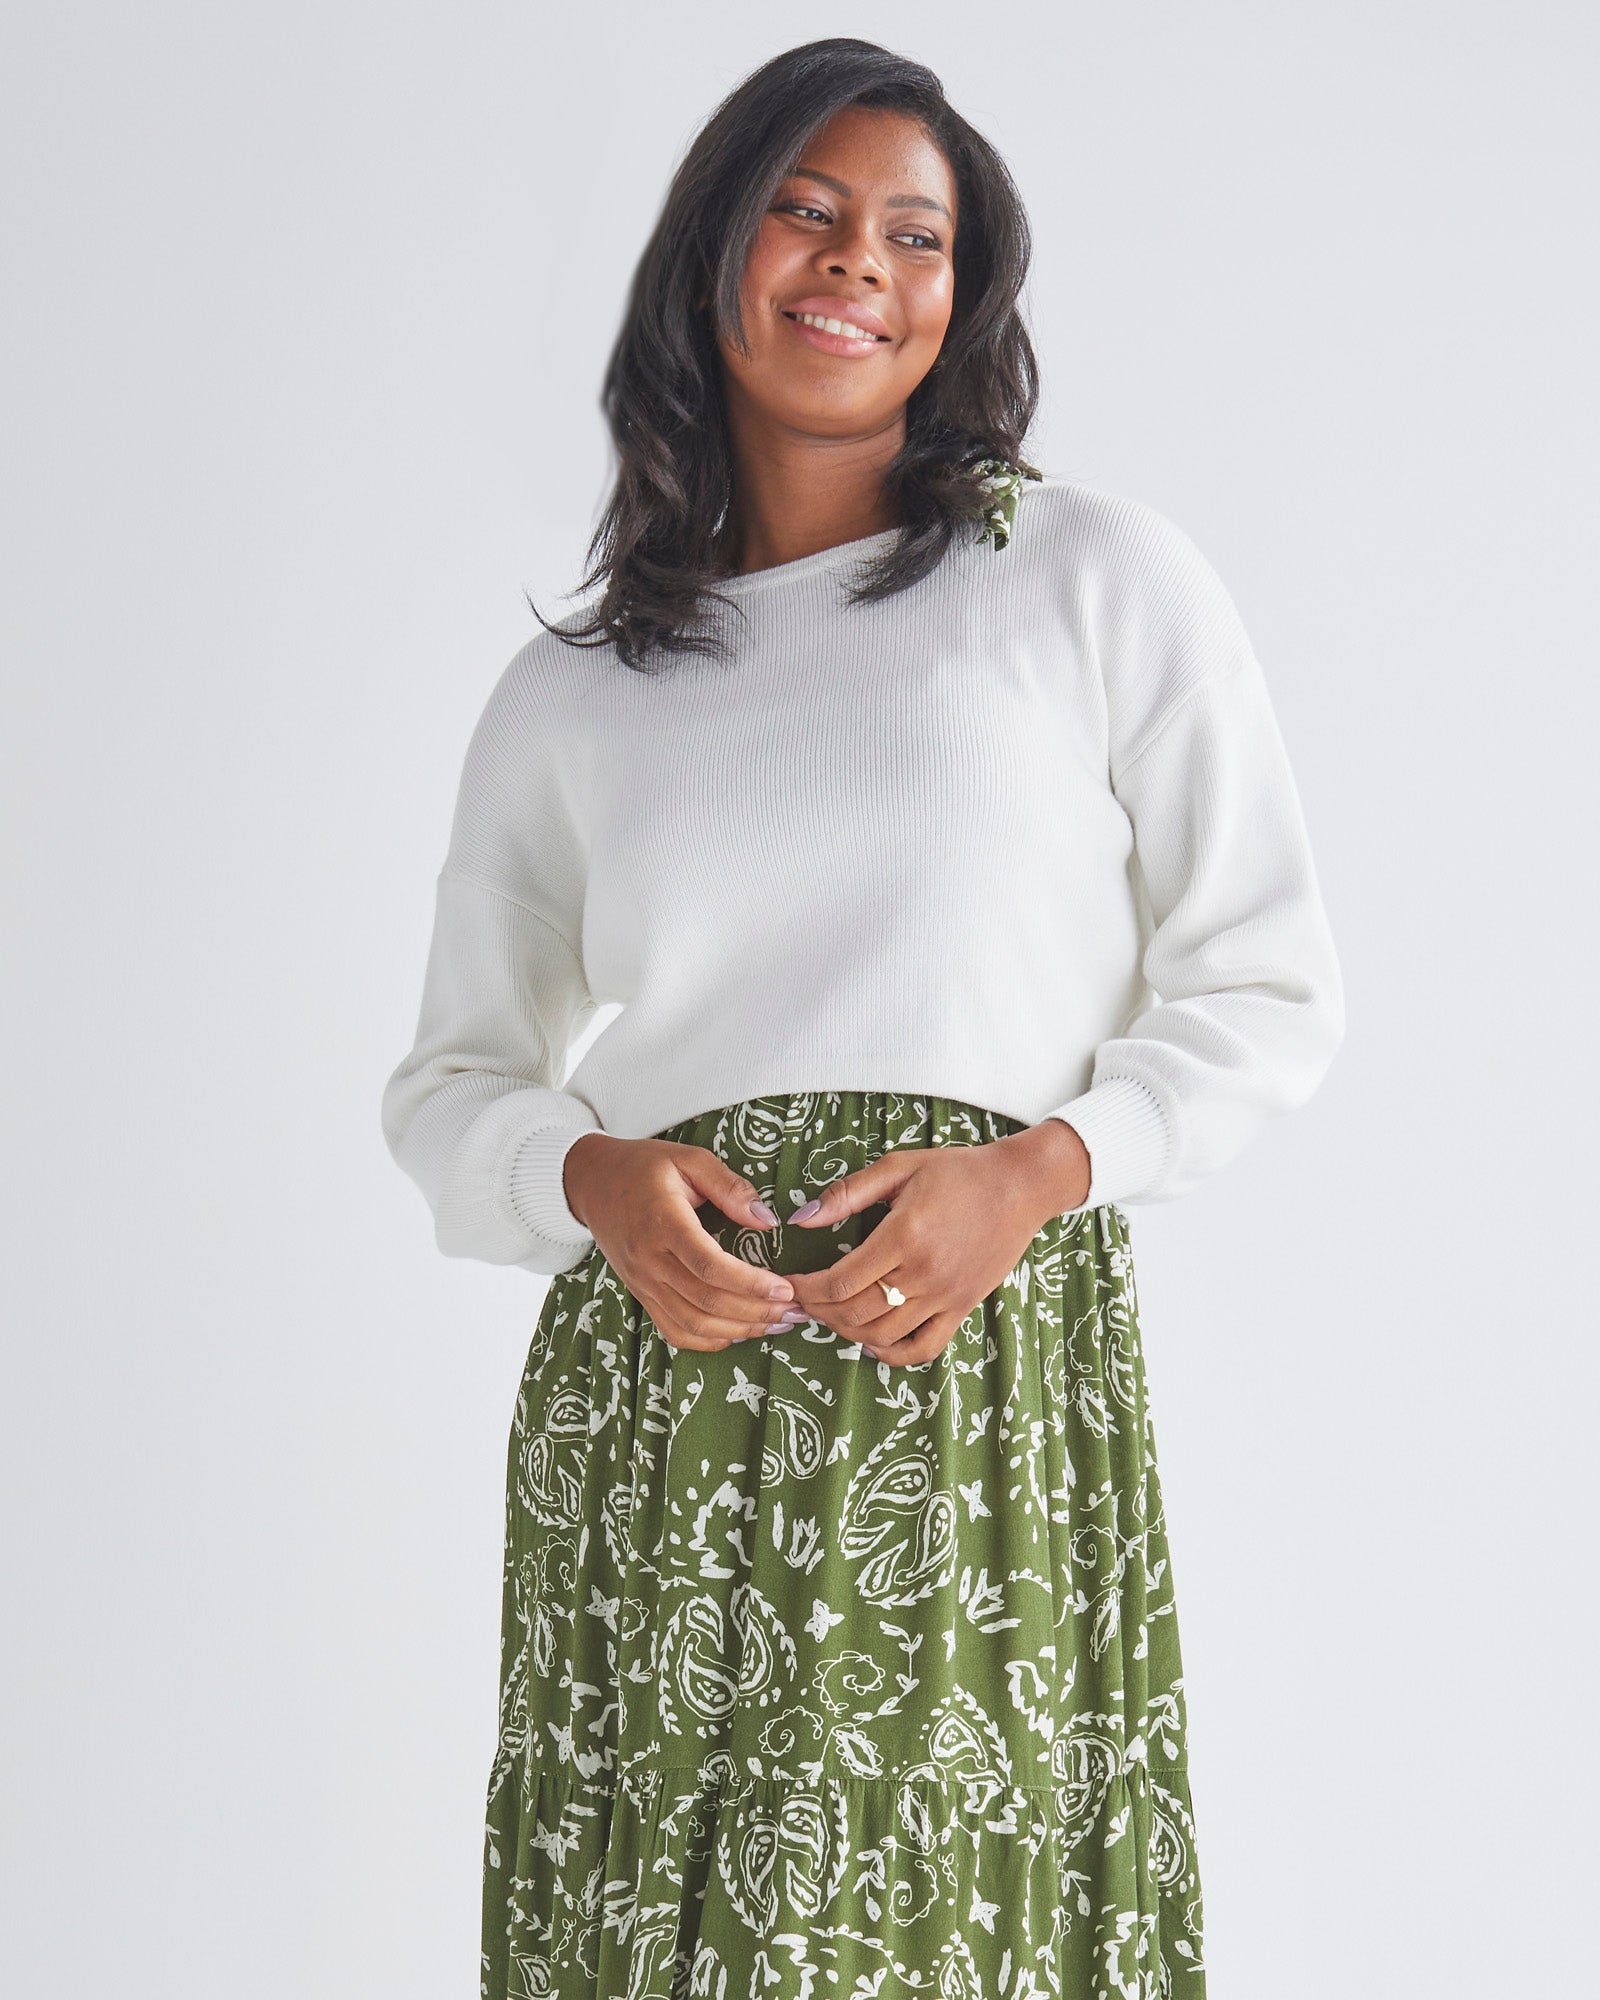 https://angelmaternity.com.au/cdn/shop/files/N2334WHT_white_knitted_maternity_blouse.jpg?v=1710837331&width=1600